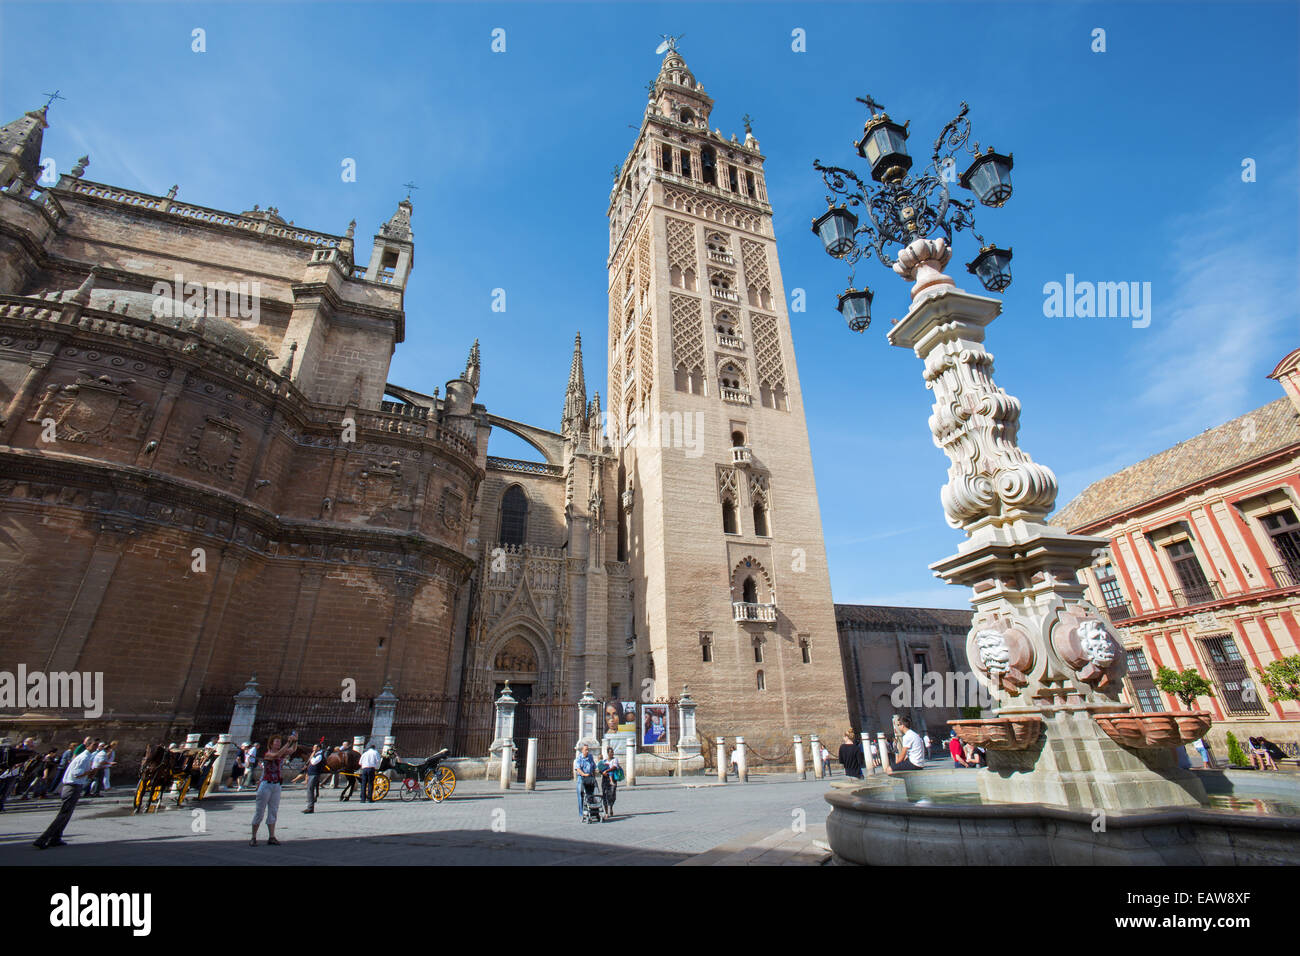 Sevilla, España - 28 de octubre de 2014: la Catedral de Santa María de la Sede de la Giralda desde la Plaza del Triumfo. Foto de stock